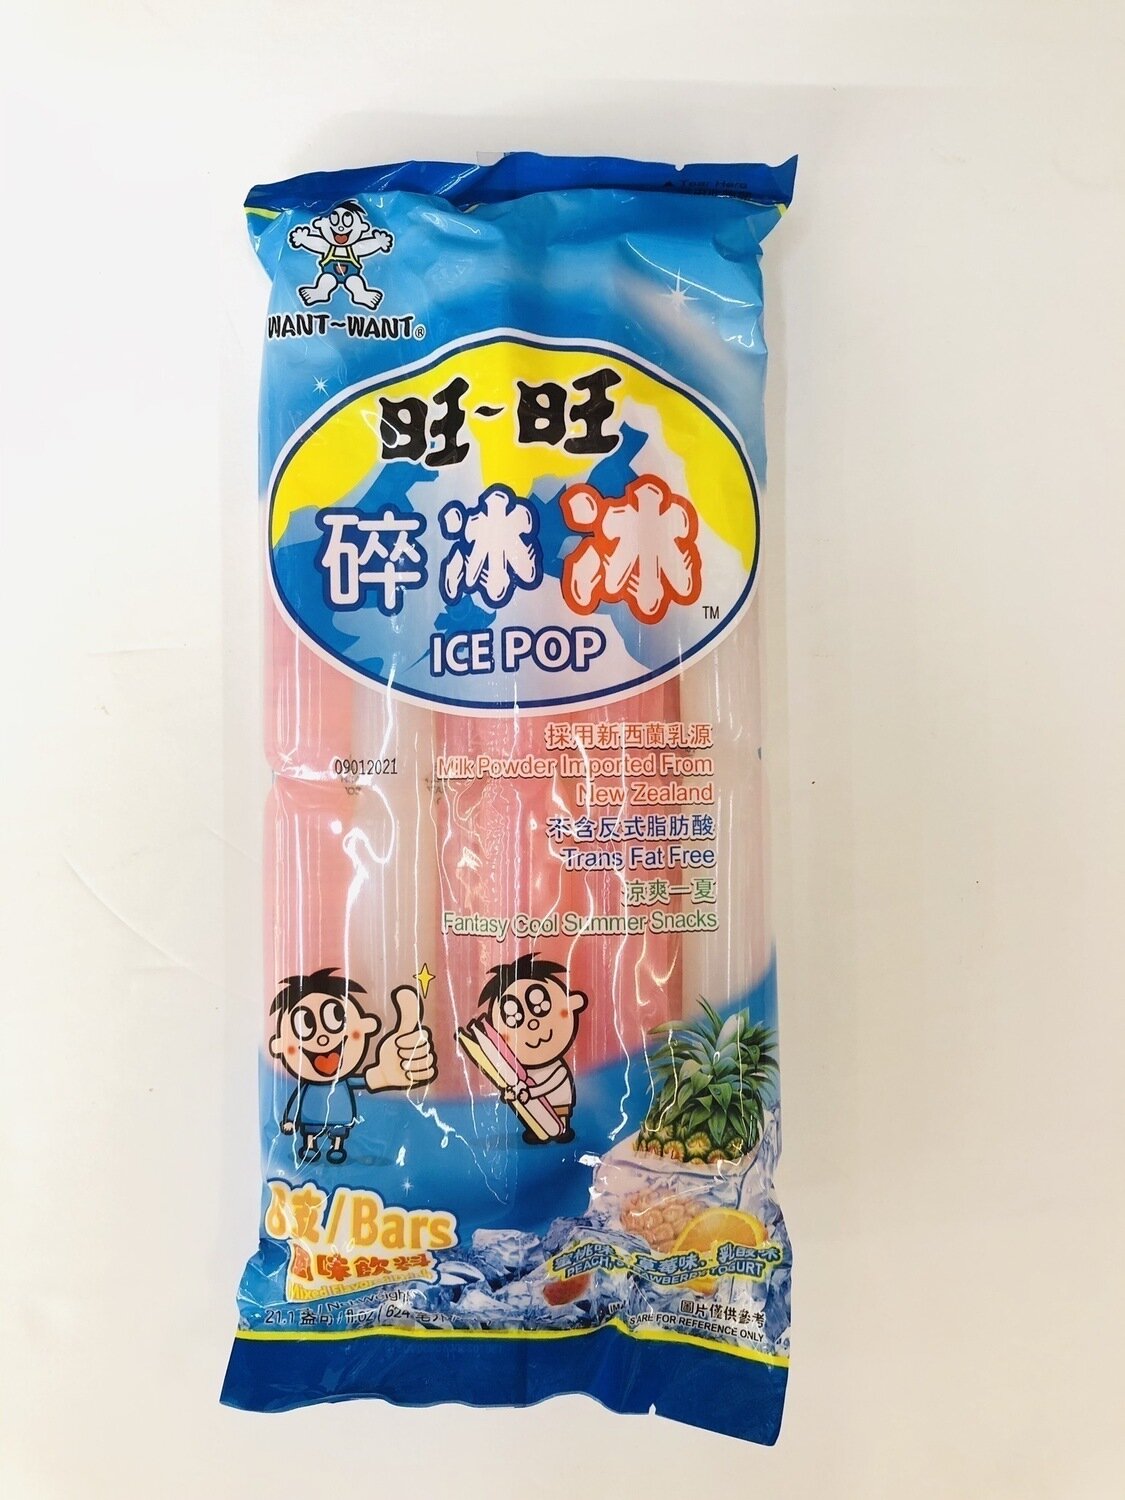 旺旺碎冰冰风味饮料 WANT~WANT ICE POP Mixed Flavored Drink~8 Bars 21.1oz(624ml)